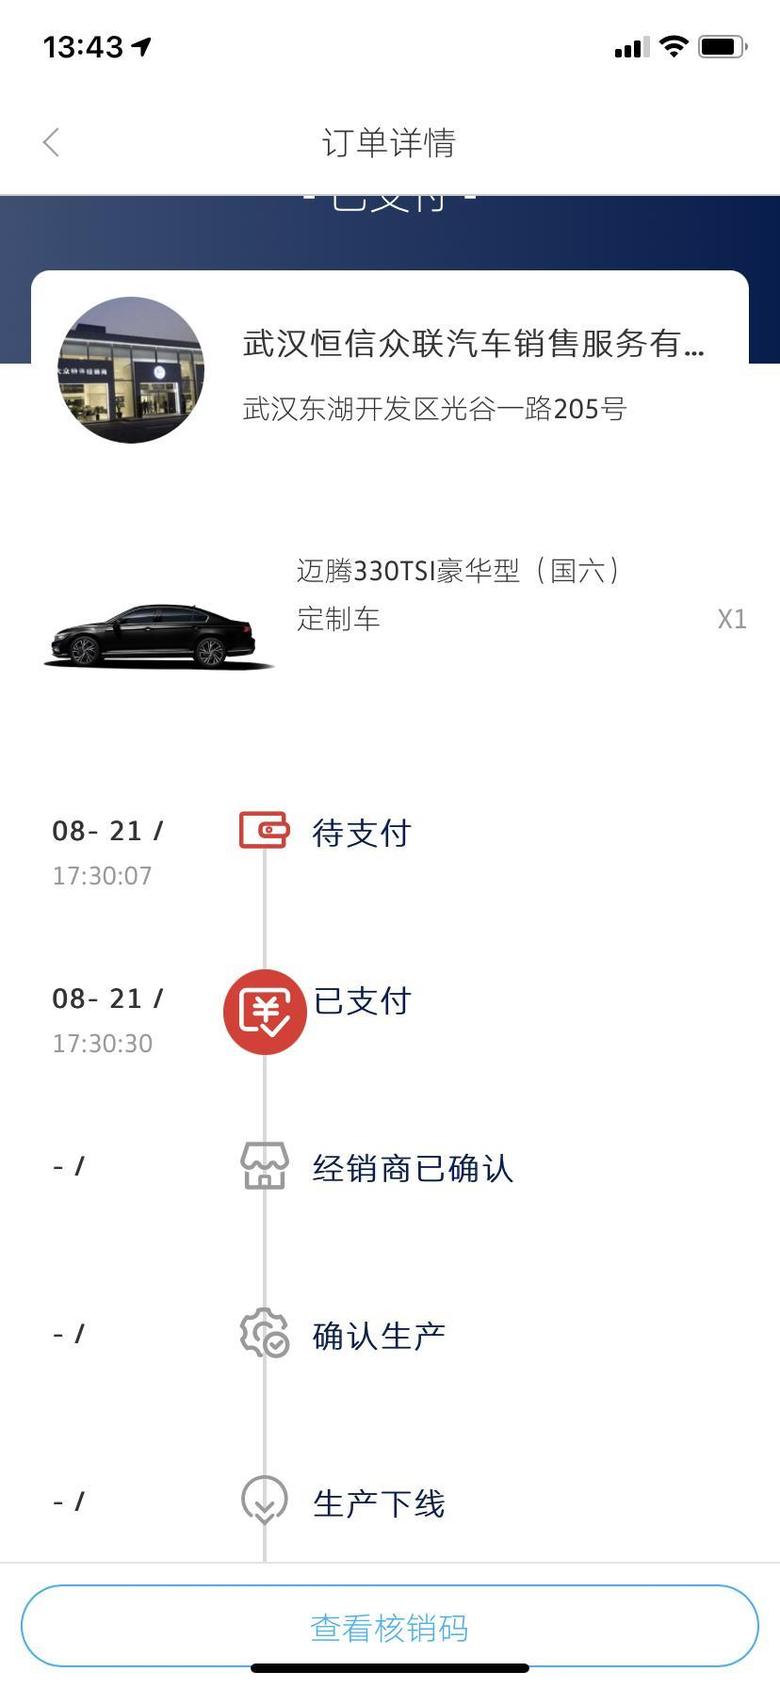 标致508l 上个月在武汉定了迈腾330纪念版，等了二十天，今天销售跟我说十月份都不一定有车，懒得等了，想问问大家508L定车多久能提车。这边销售说22款月底就可以提车